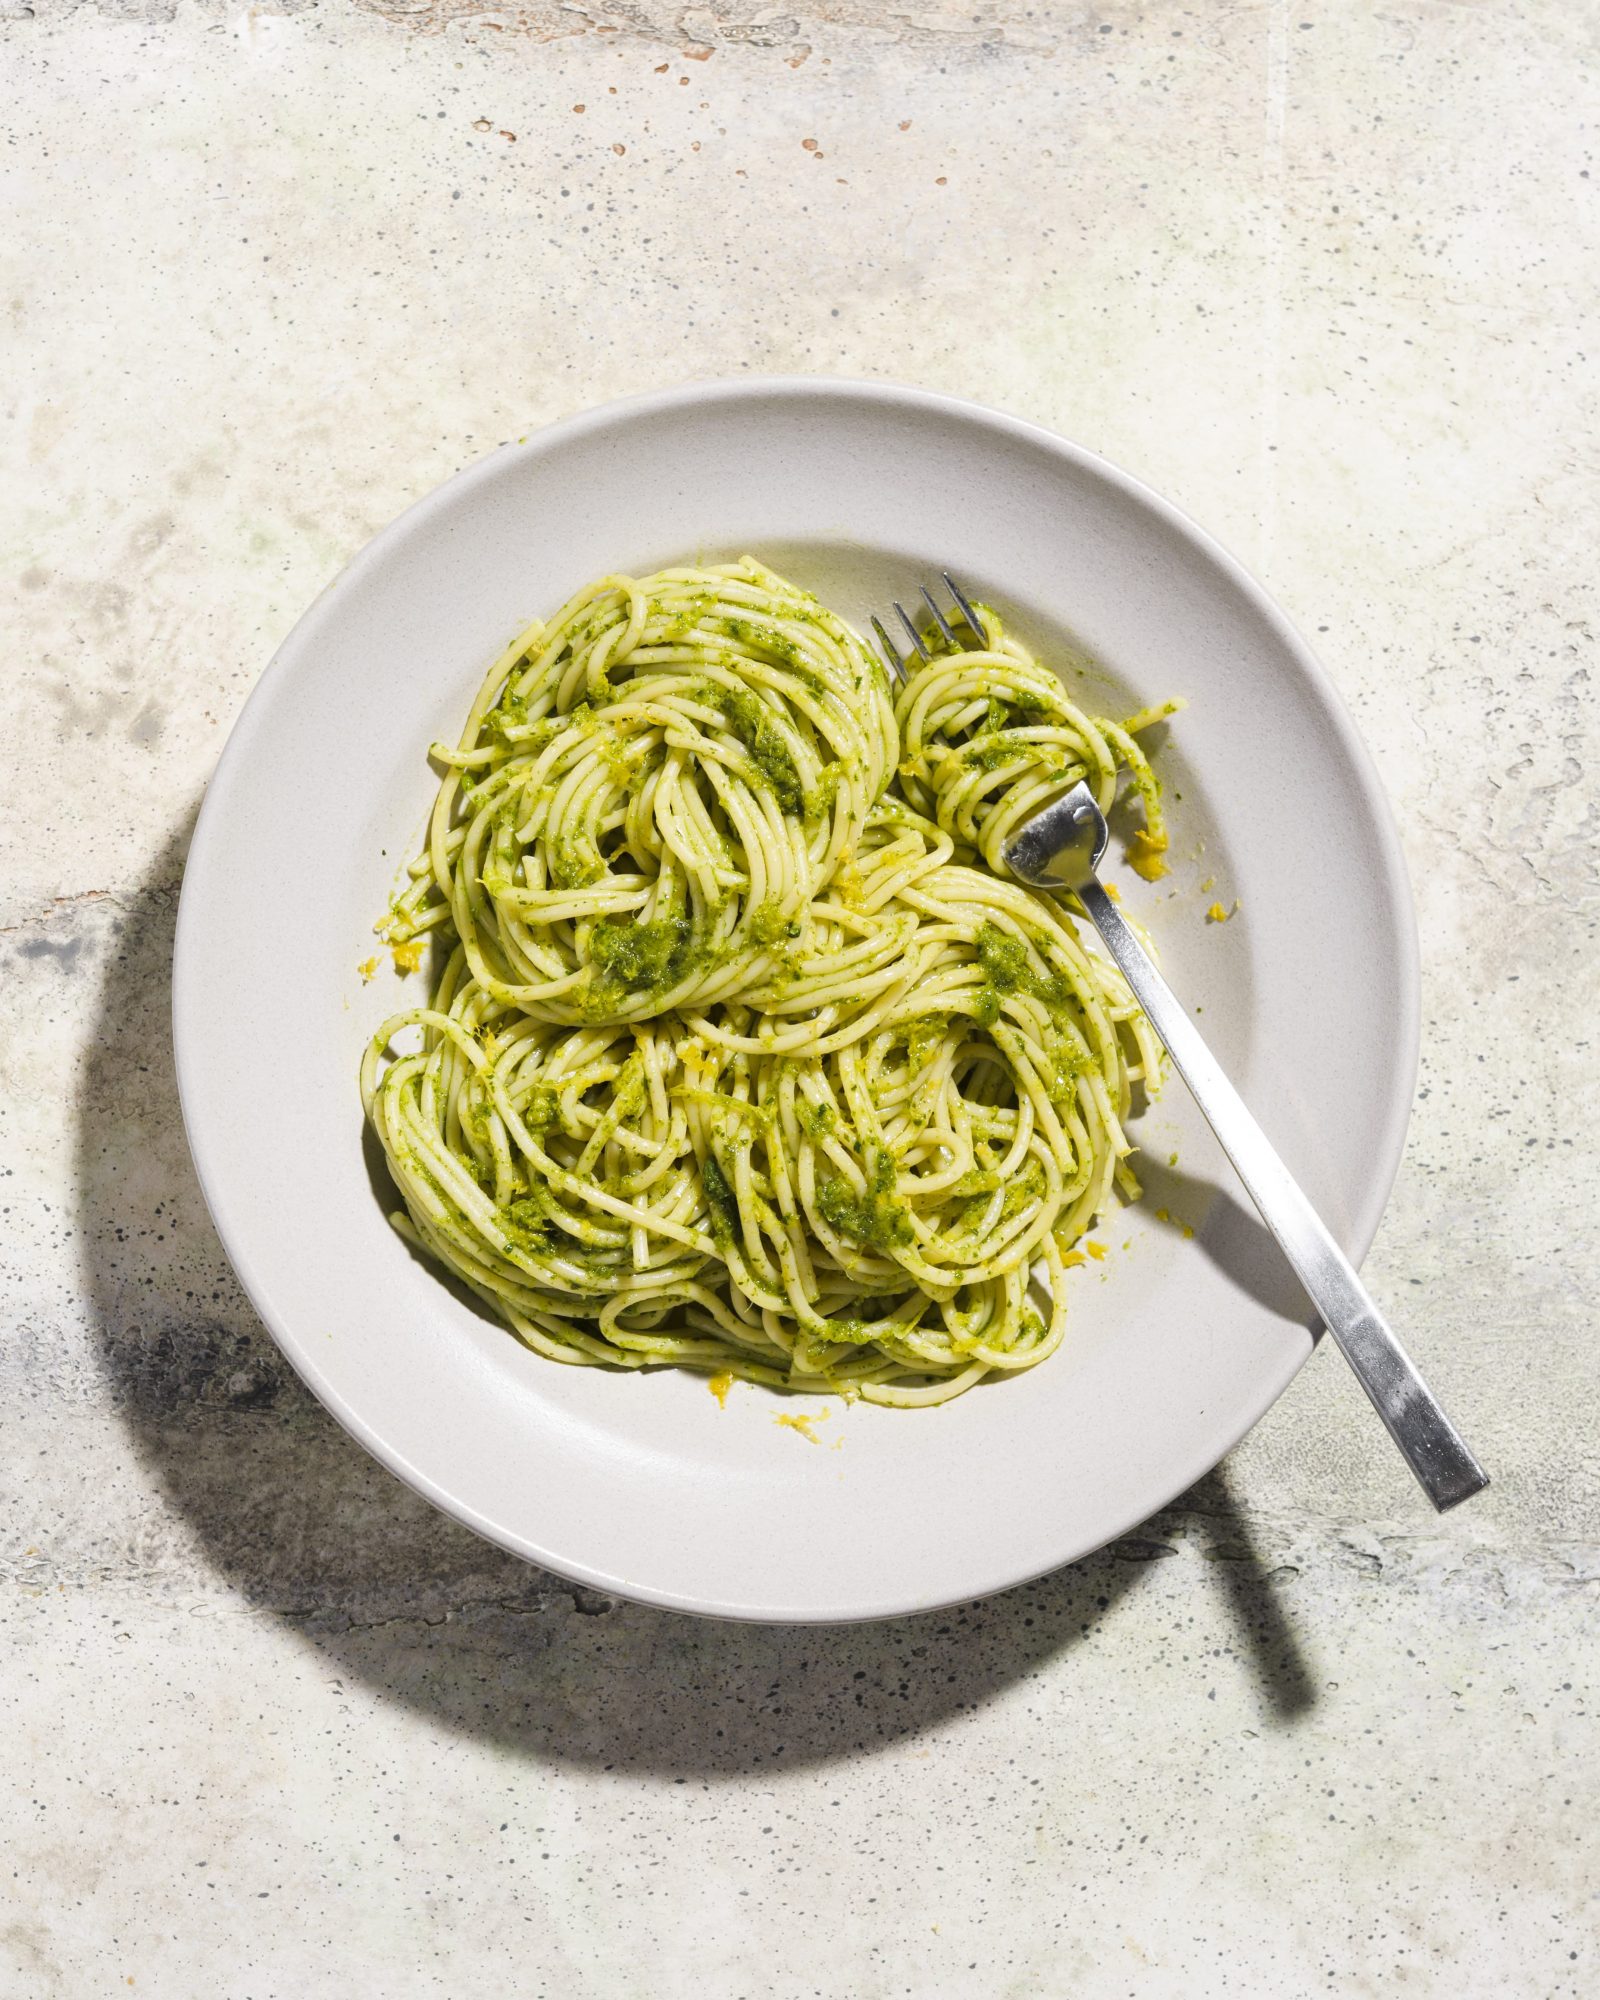 Spaghetti parsley pesto spaghetti al pesto di prezzemolo v